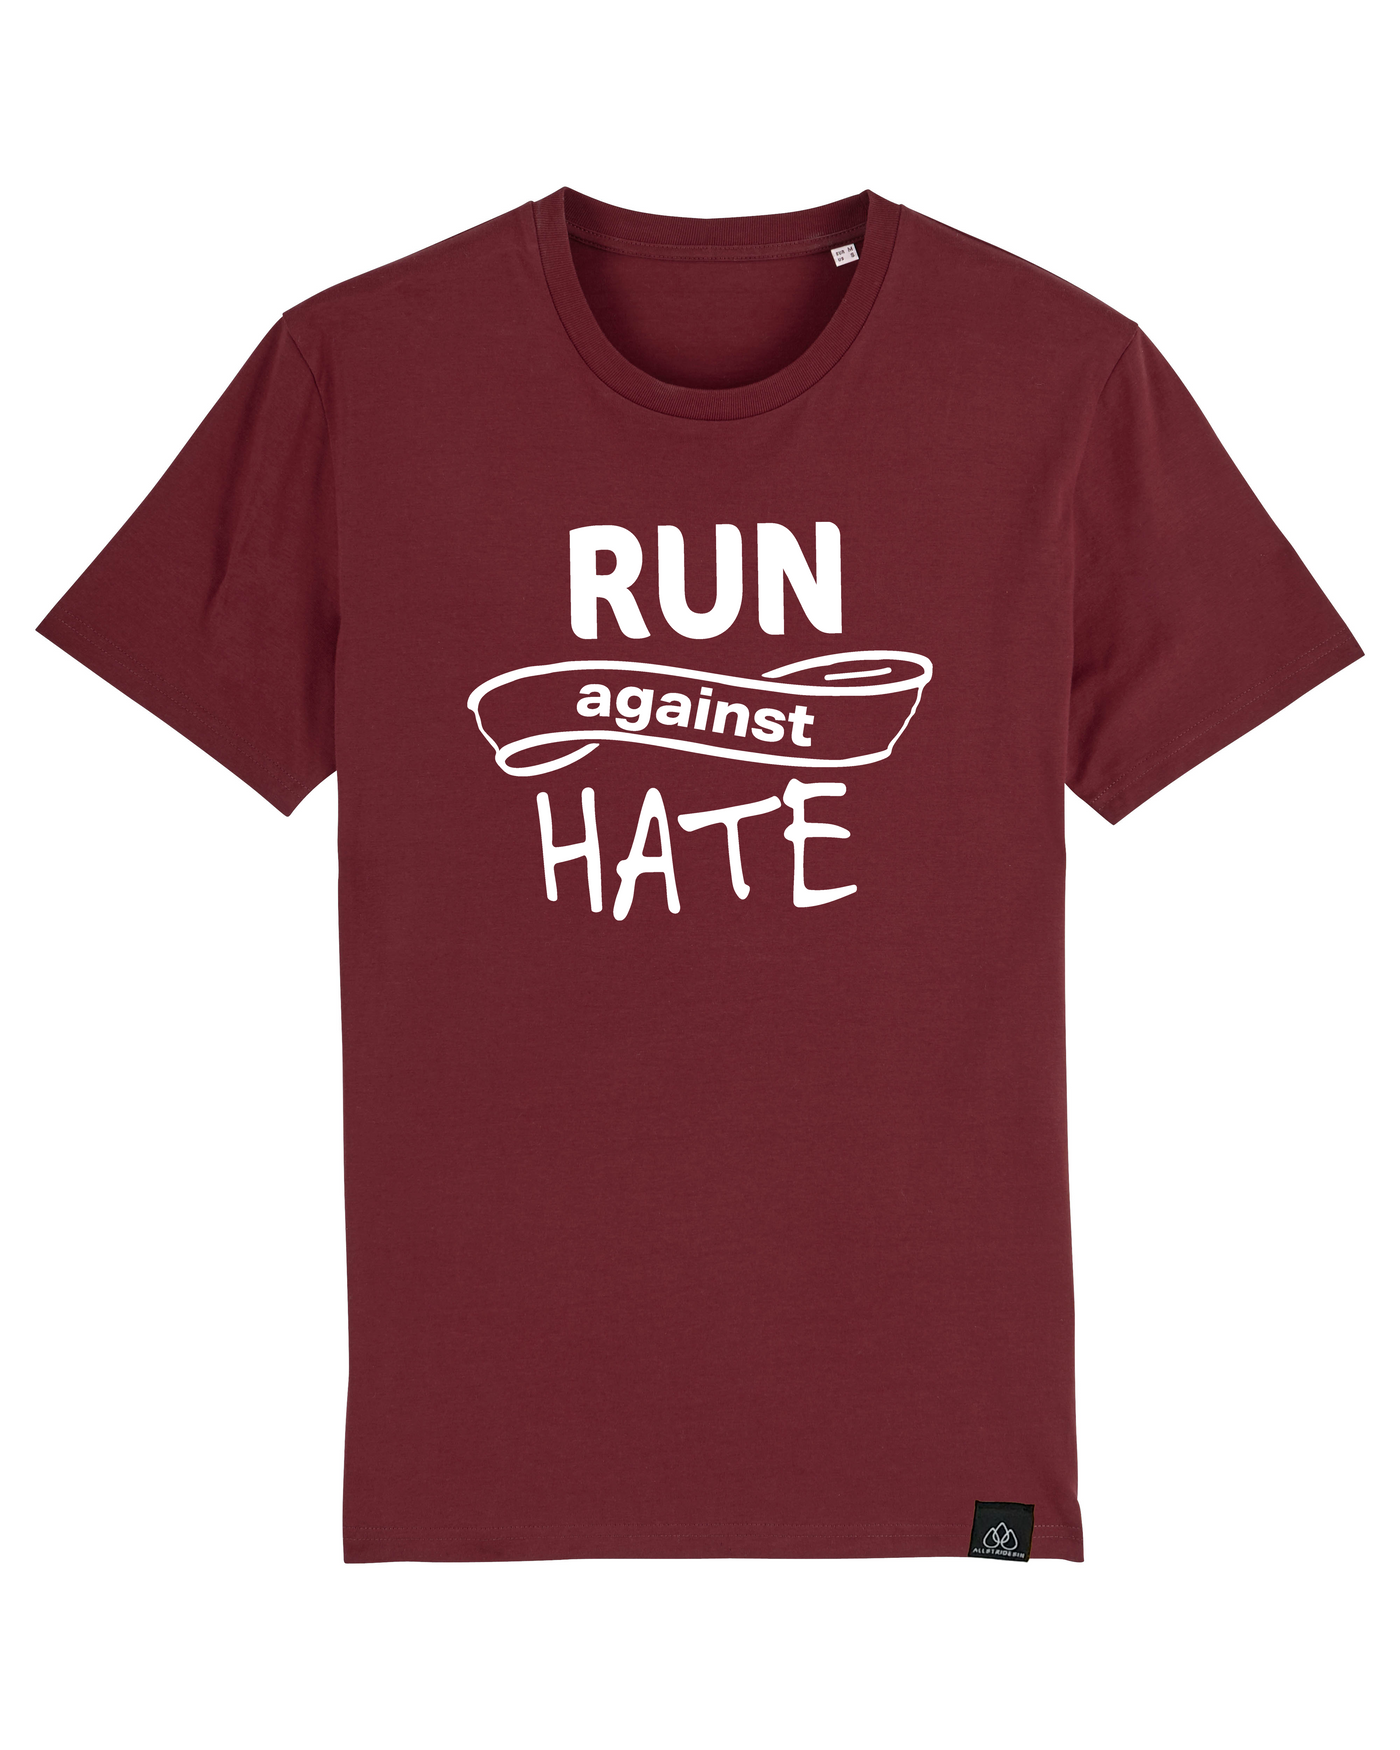 Run against hate Unisex T-Shirt